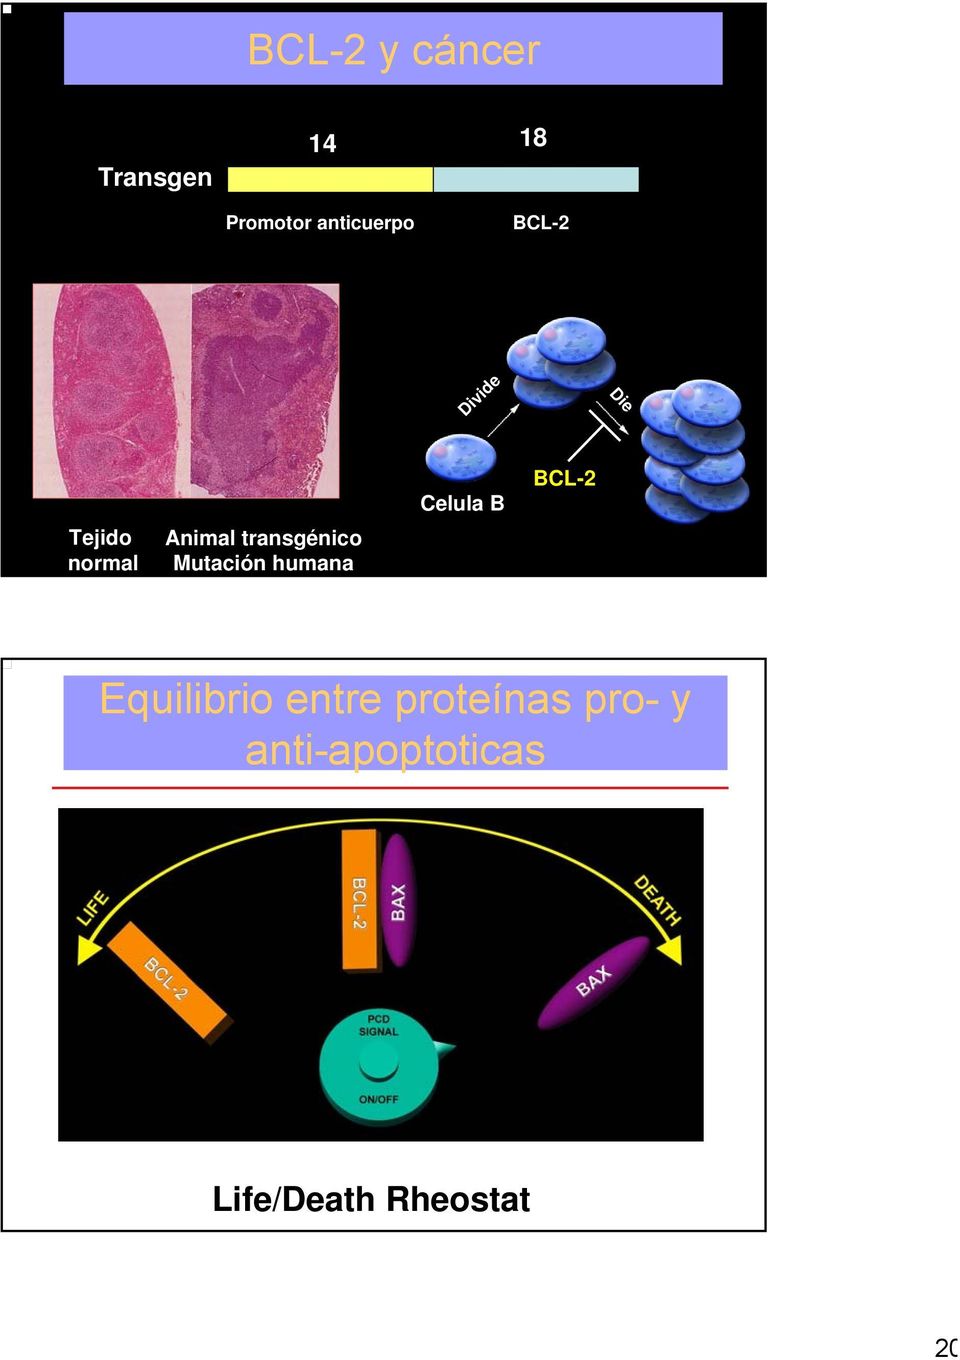 transgénico Mutación humana Celula B Cell B BCL-2